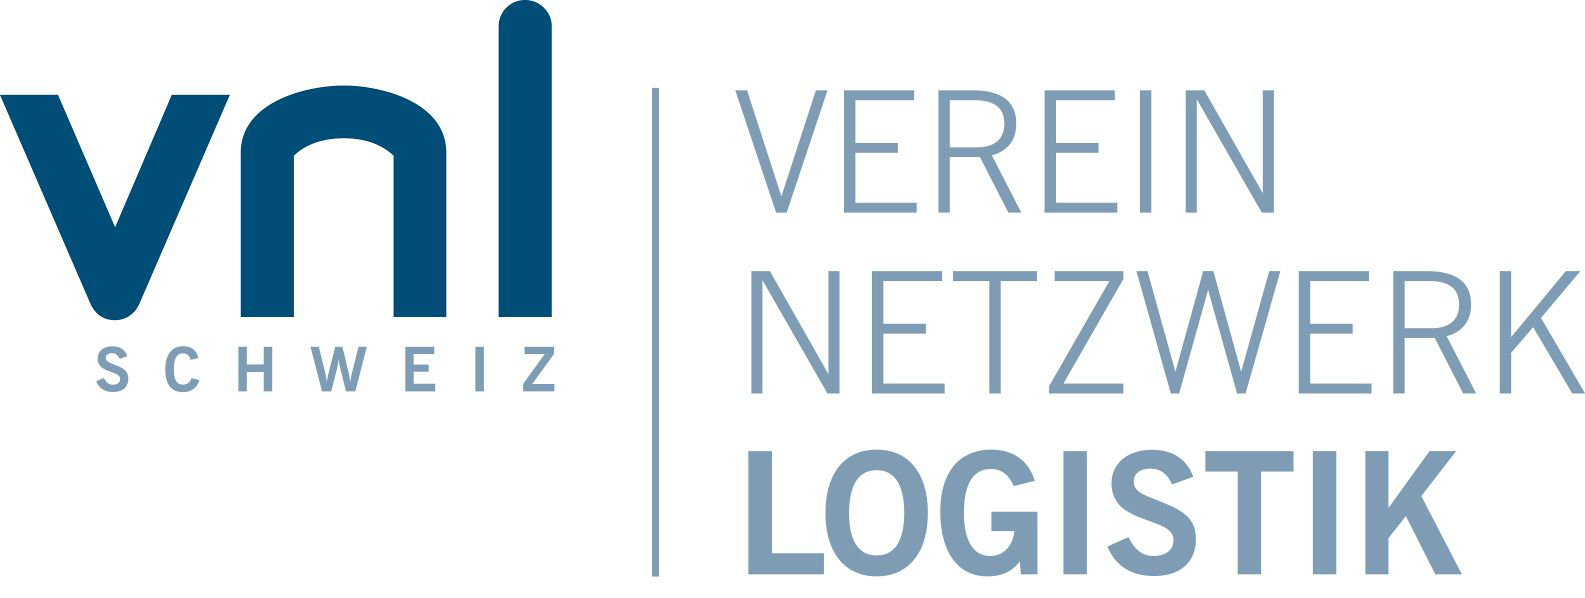 Logo Verein Netzwerk Logistik Trägerschaftsmitglied der ABB Technikerschule